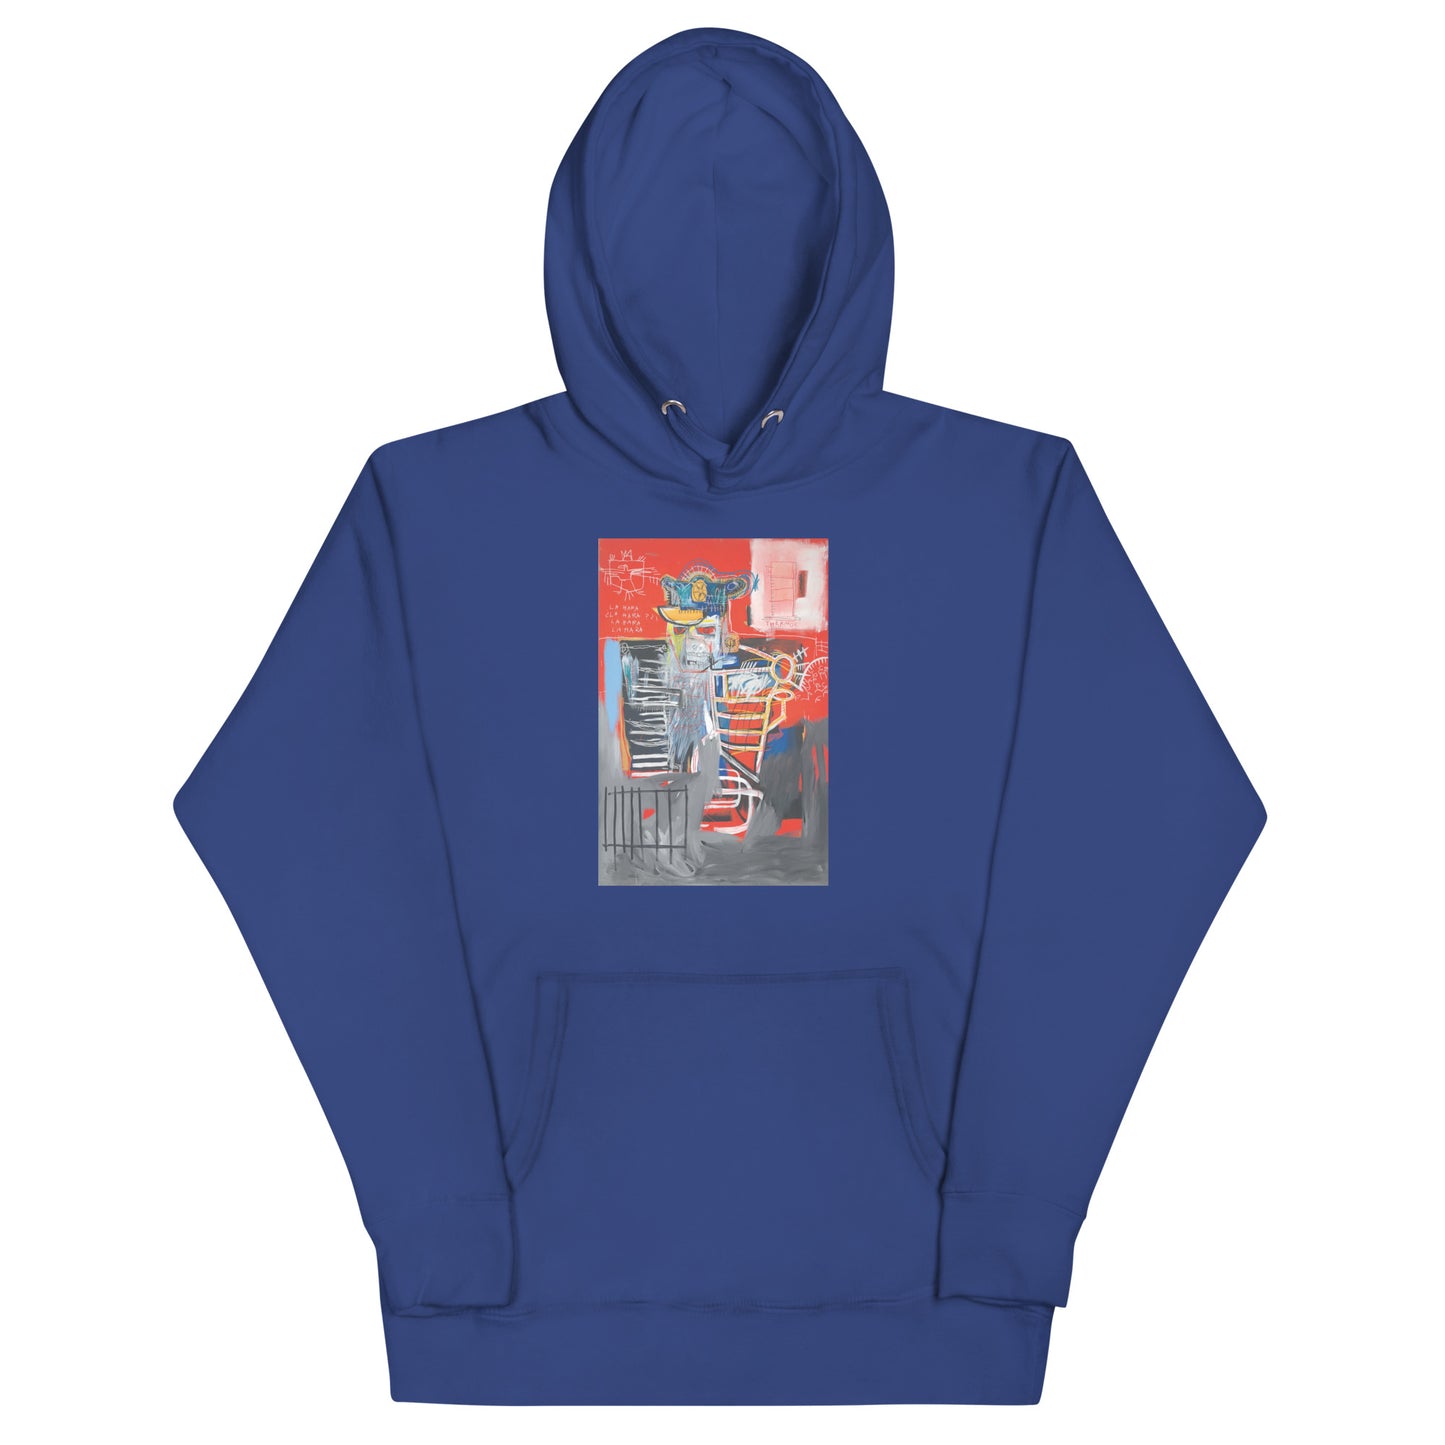 Jean-Michel Basquiat "La Hara" Artwork Printed Premium Streetwear Sweatshirt Hoodie Royal Blue